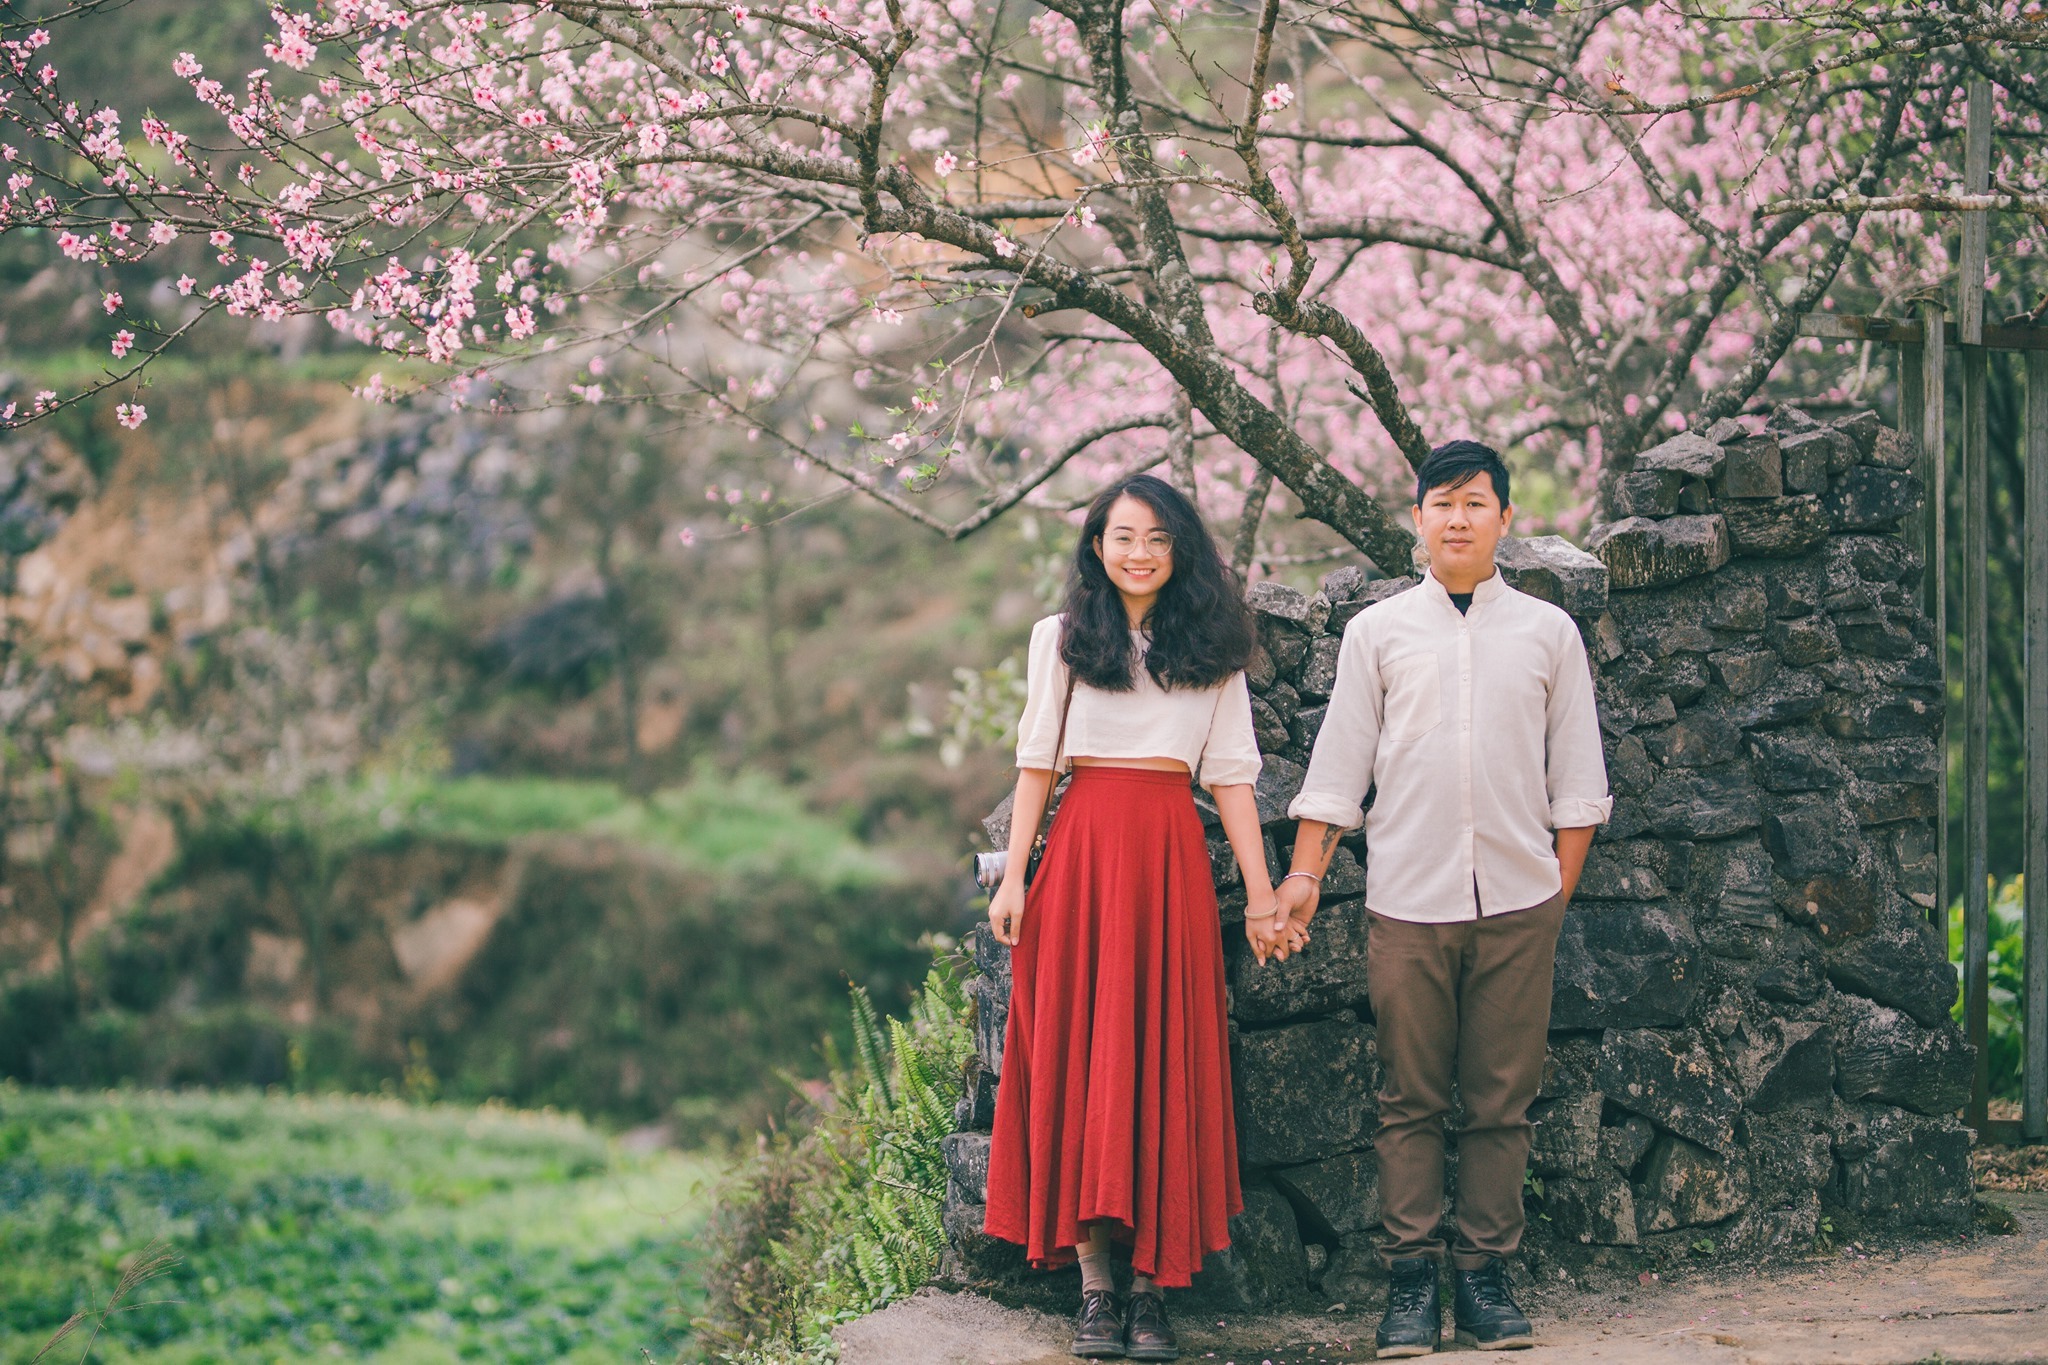 Quen nhau qua mạng xã hội, cặp đôi 4 năm nắm tay đi hết các tỉnh thành Việt Nam thỏa đam mê du lịch cùng nhau